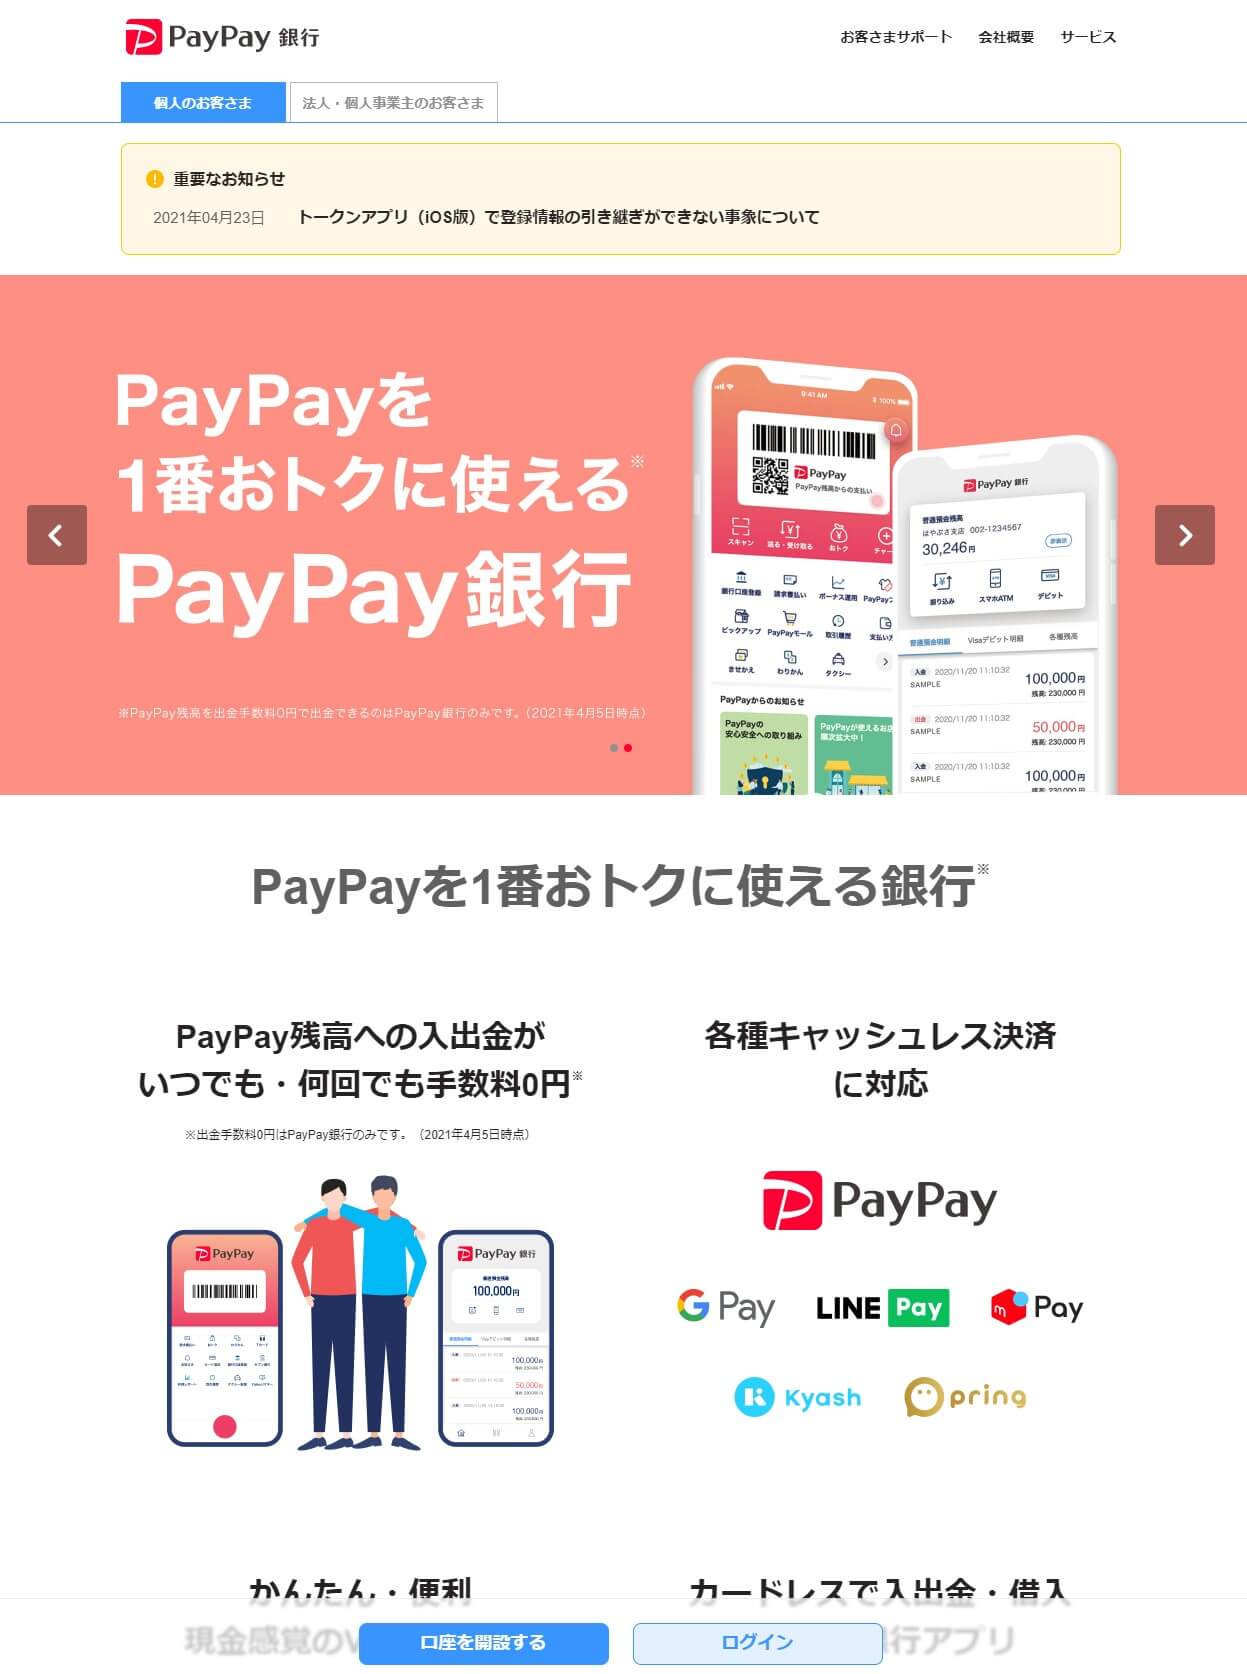 PayPay銀行ならVisaのタッチ決済対応カードが簡単に作れる